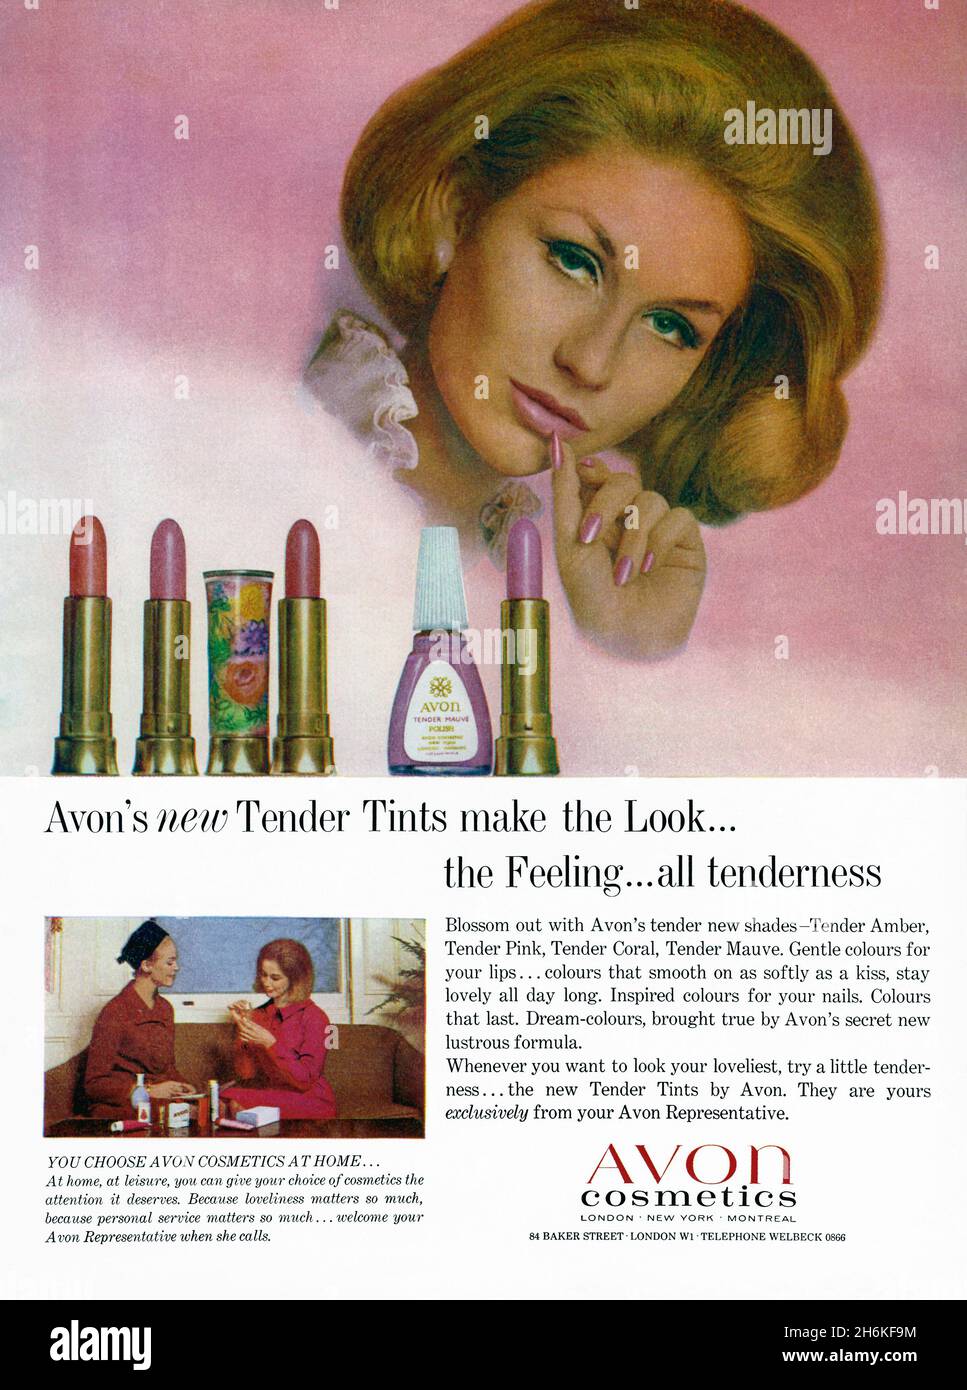 Eine Anzeige von 1960s für Avon Cosmetics, die Marke, die sich stark darauf  verlassen hat, dass Vertreter die Make-up-Produkte im eigenen Haus besuchen  und verkaufen. Die Anzeige erschien in einer Zeitschrift, die